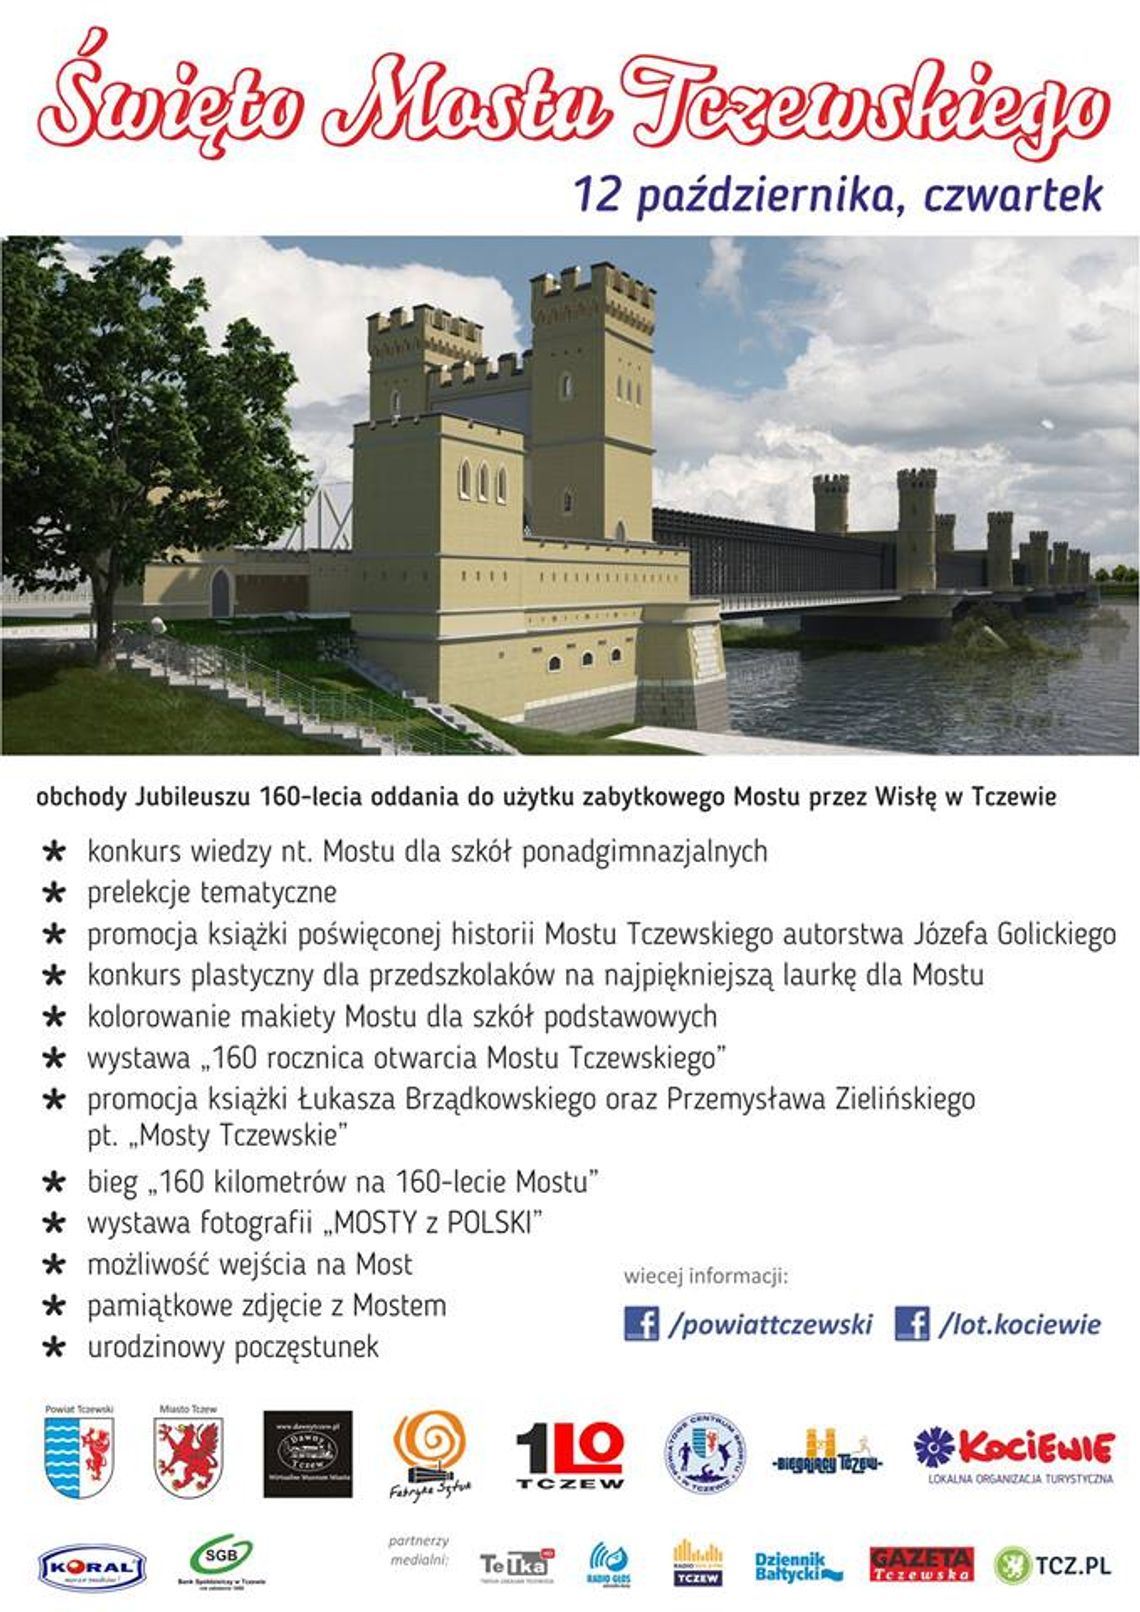 Świętu Mostu Tczewskiego - 160 urodziny!